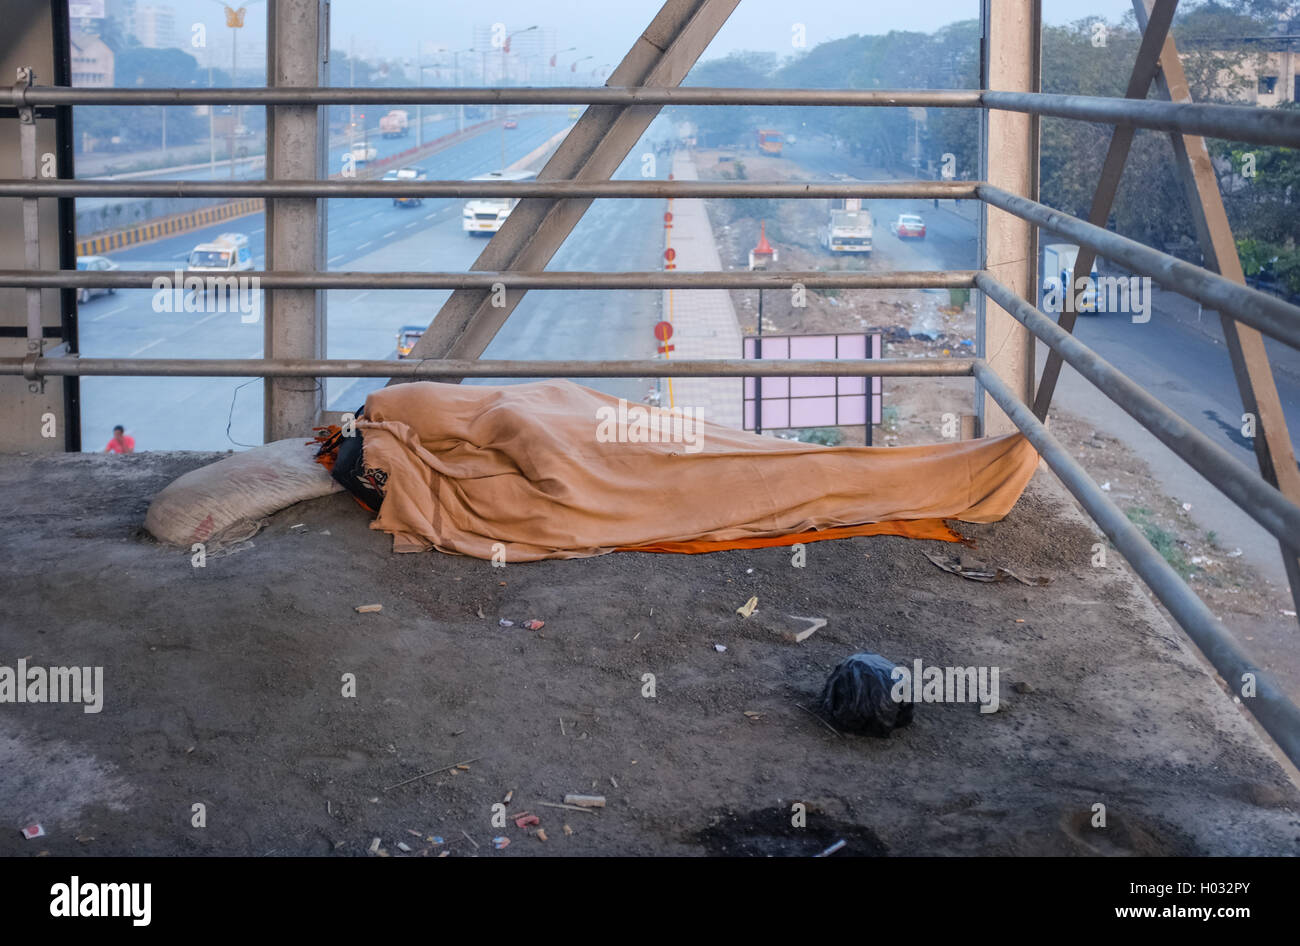 MUMBAI, Indien - 5. Februar 2015: Person schläft auf Überführung auf schmutzigen Boden mit ganzen Körper unter Decke bedeckt. Gemeinsamen Szene Stockfoto